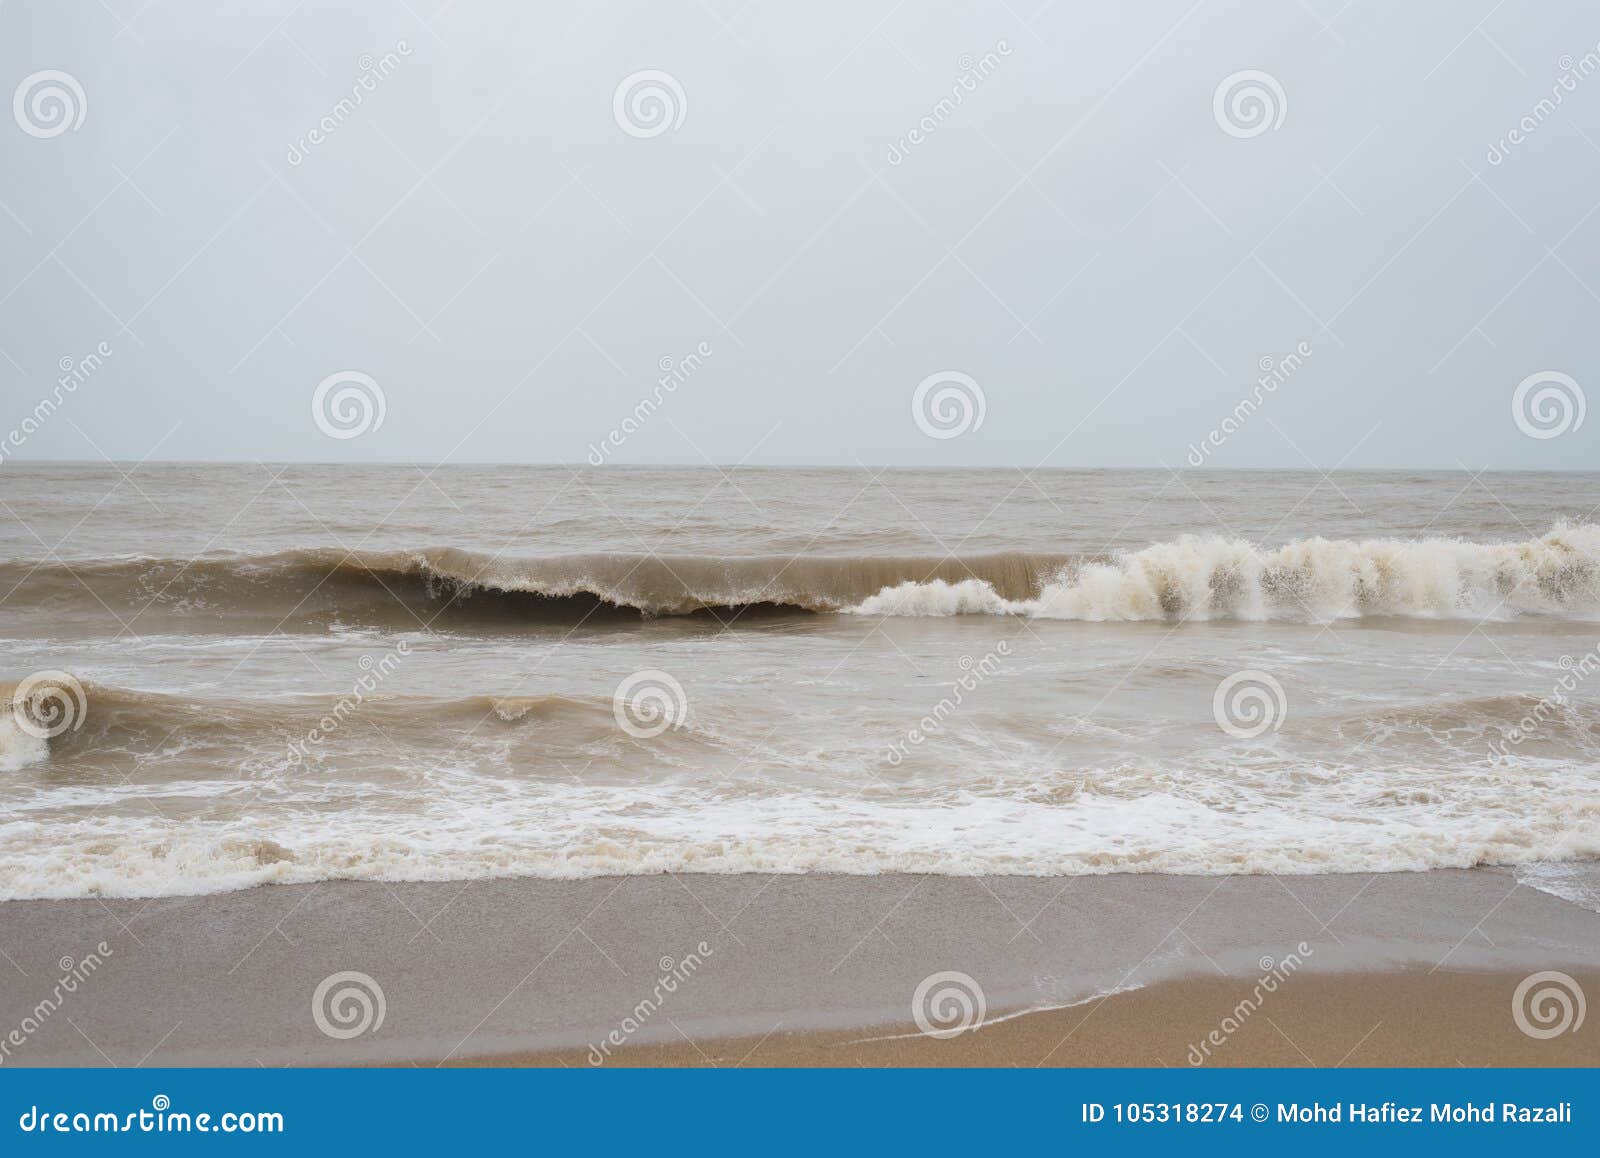 dangerous and big waves at pantai cinta berahi beach in kota bharu, kelantan, malaysia